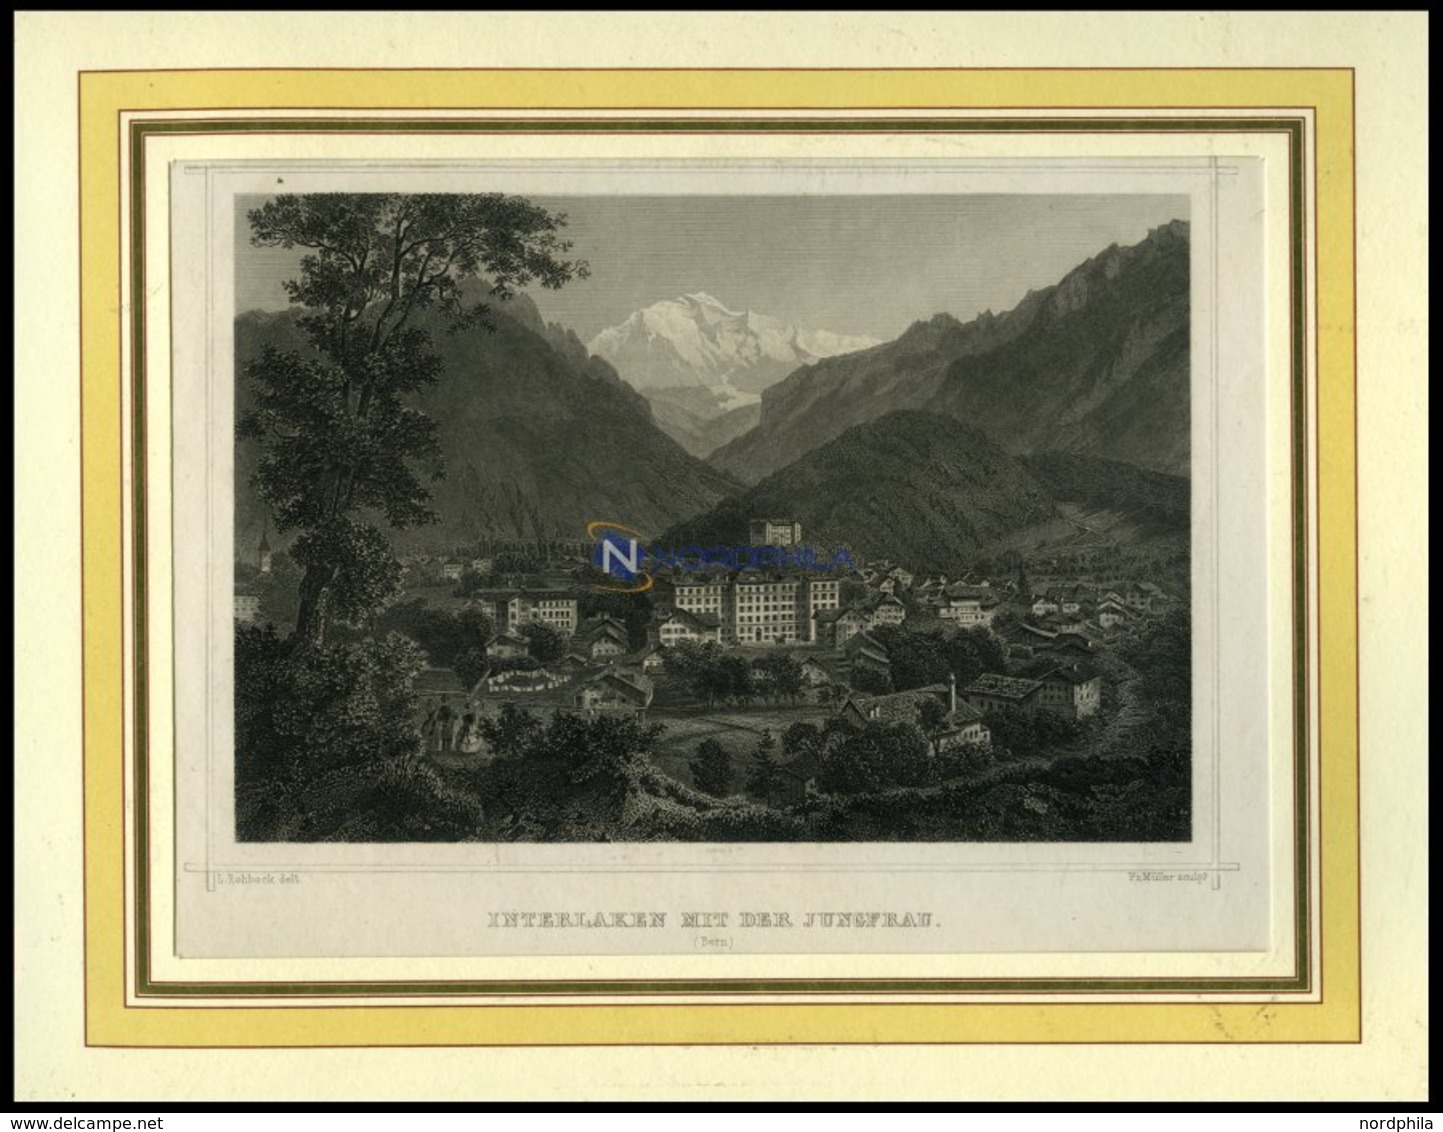 INTERLAKEN, Gesamtansicht Mit Der Jungfrau, Stahlstich Von Rohbock/Müller Um 1840 - Litografia